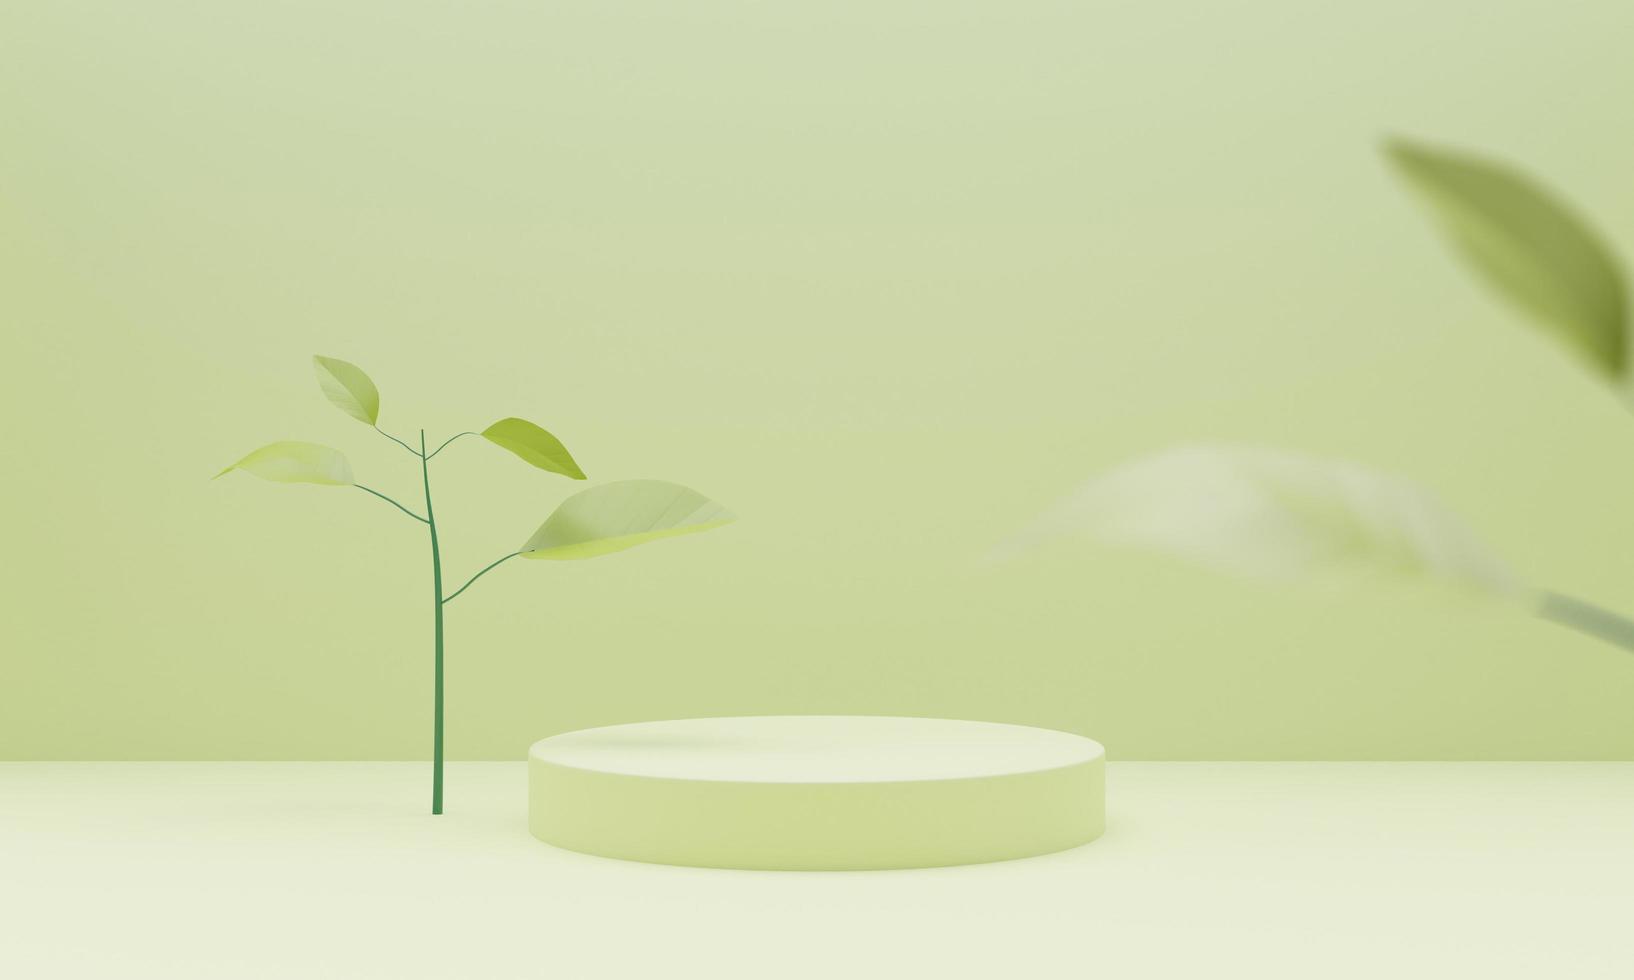 sfondo verde del podio 3d con cilindro geometrico simulare il podio sullo sfondo verde con foglie di piante verdi. spettacoli di presentazione del prodotto, piedistallo o piattaforma. illustrazione di rendering 3d. foto